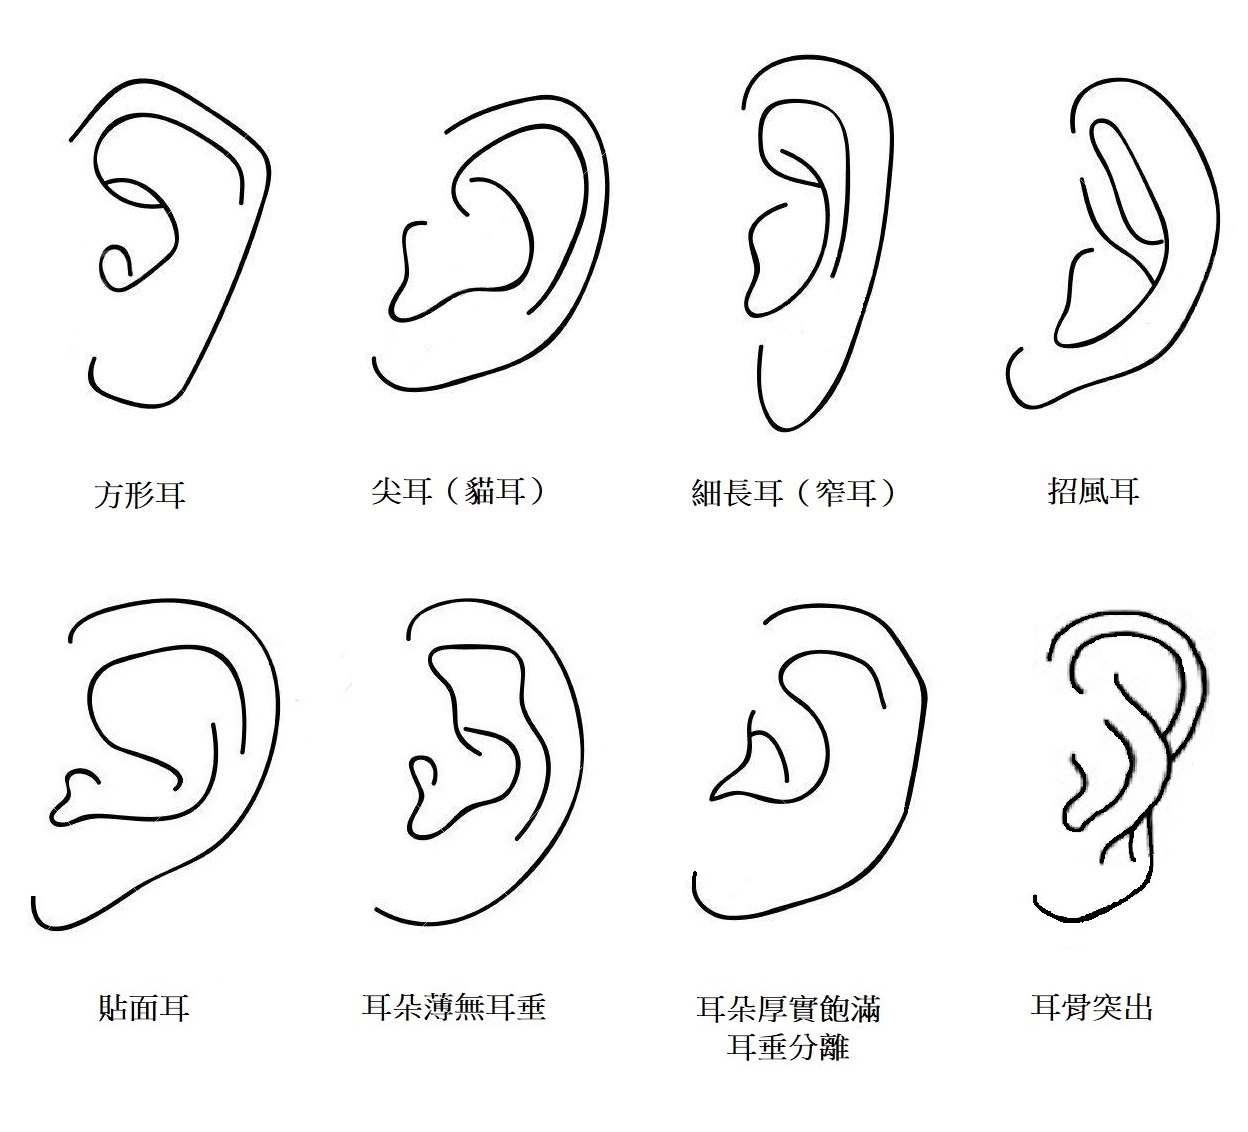 耳朵類型,耳朵類型搭配耳環,耳朵類型適合耳環,韓國耳環,夾式耳環